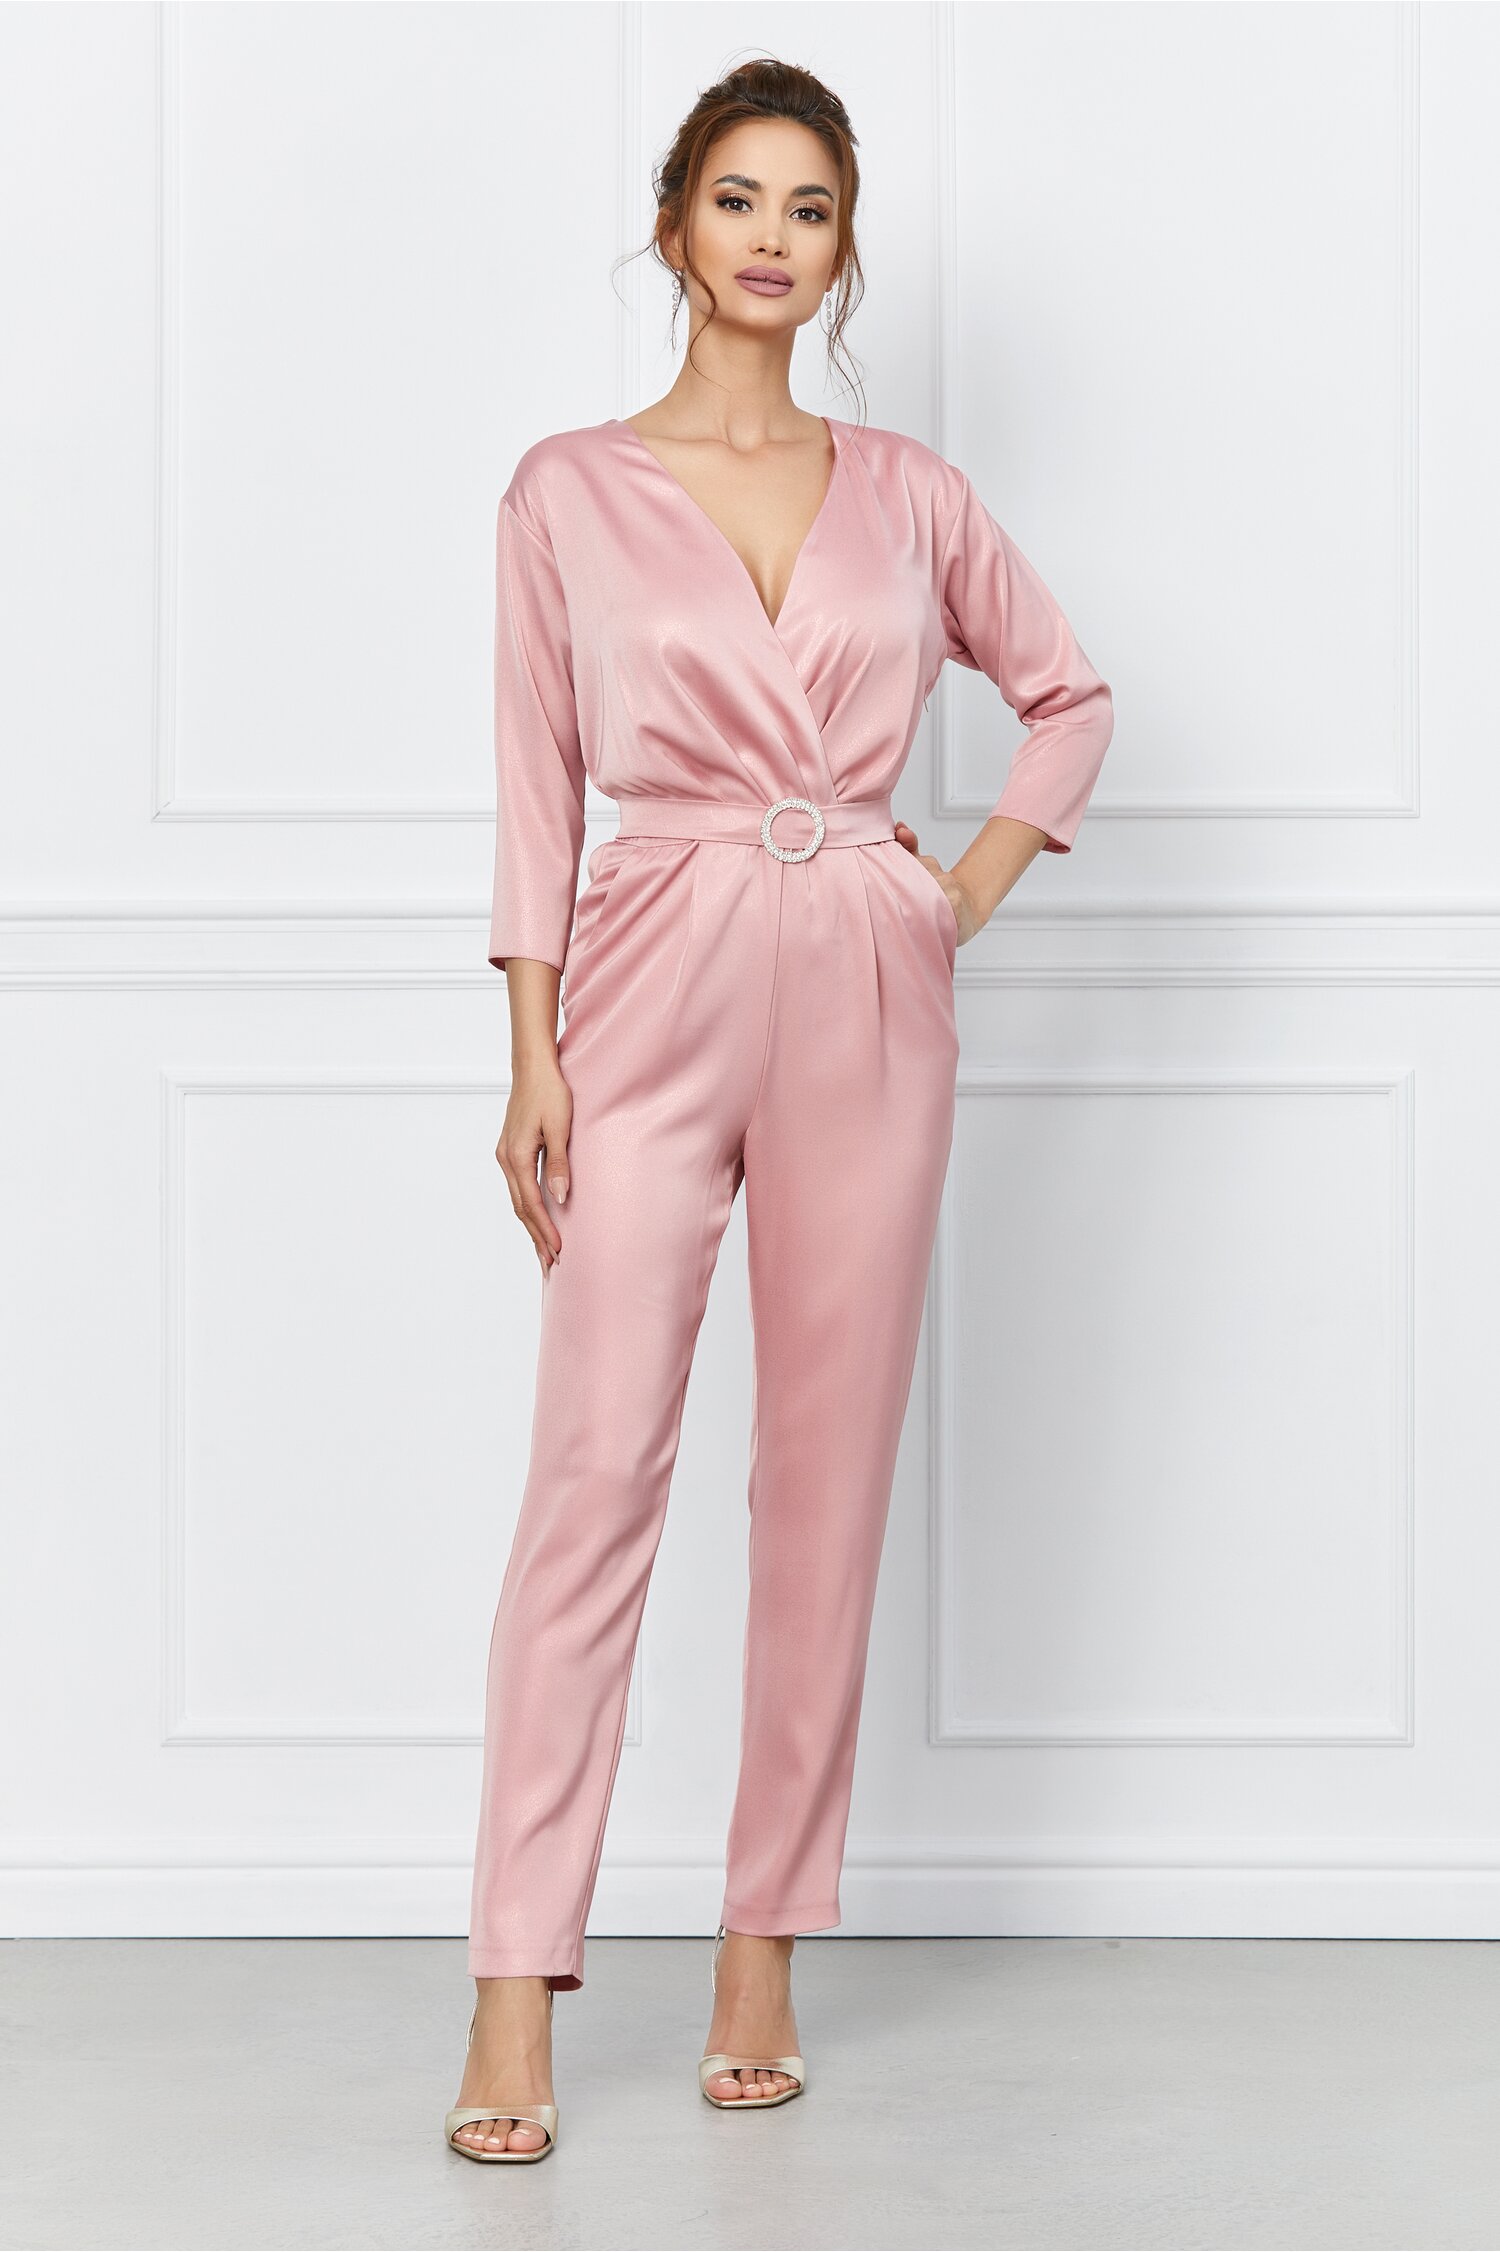 Salopeta Dy Fashion roz cu reflexii si spatele gol dyfashion.ro imagine 2022 13clothing.ro